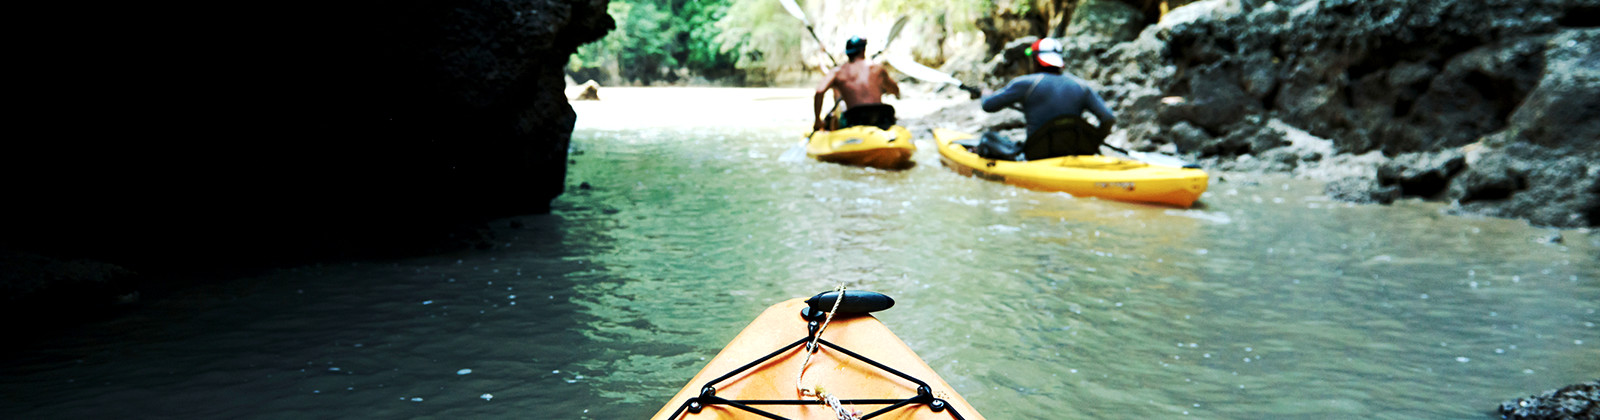 kayaking down river